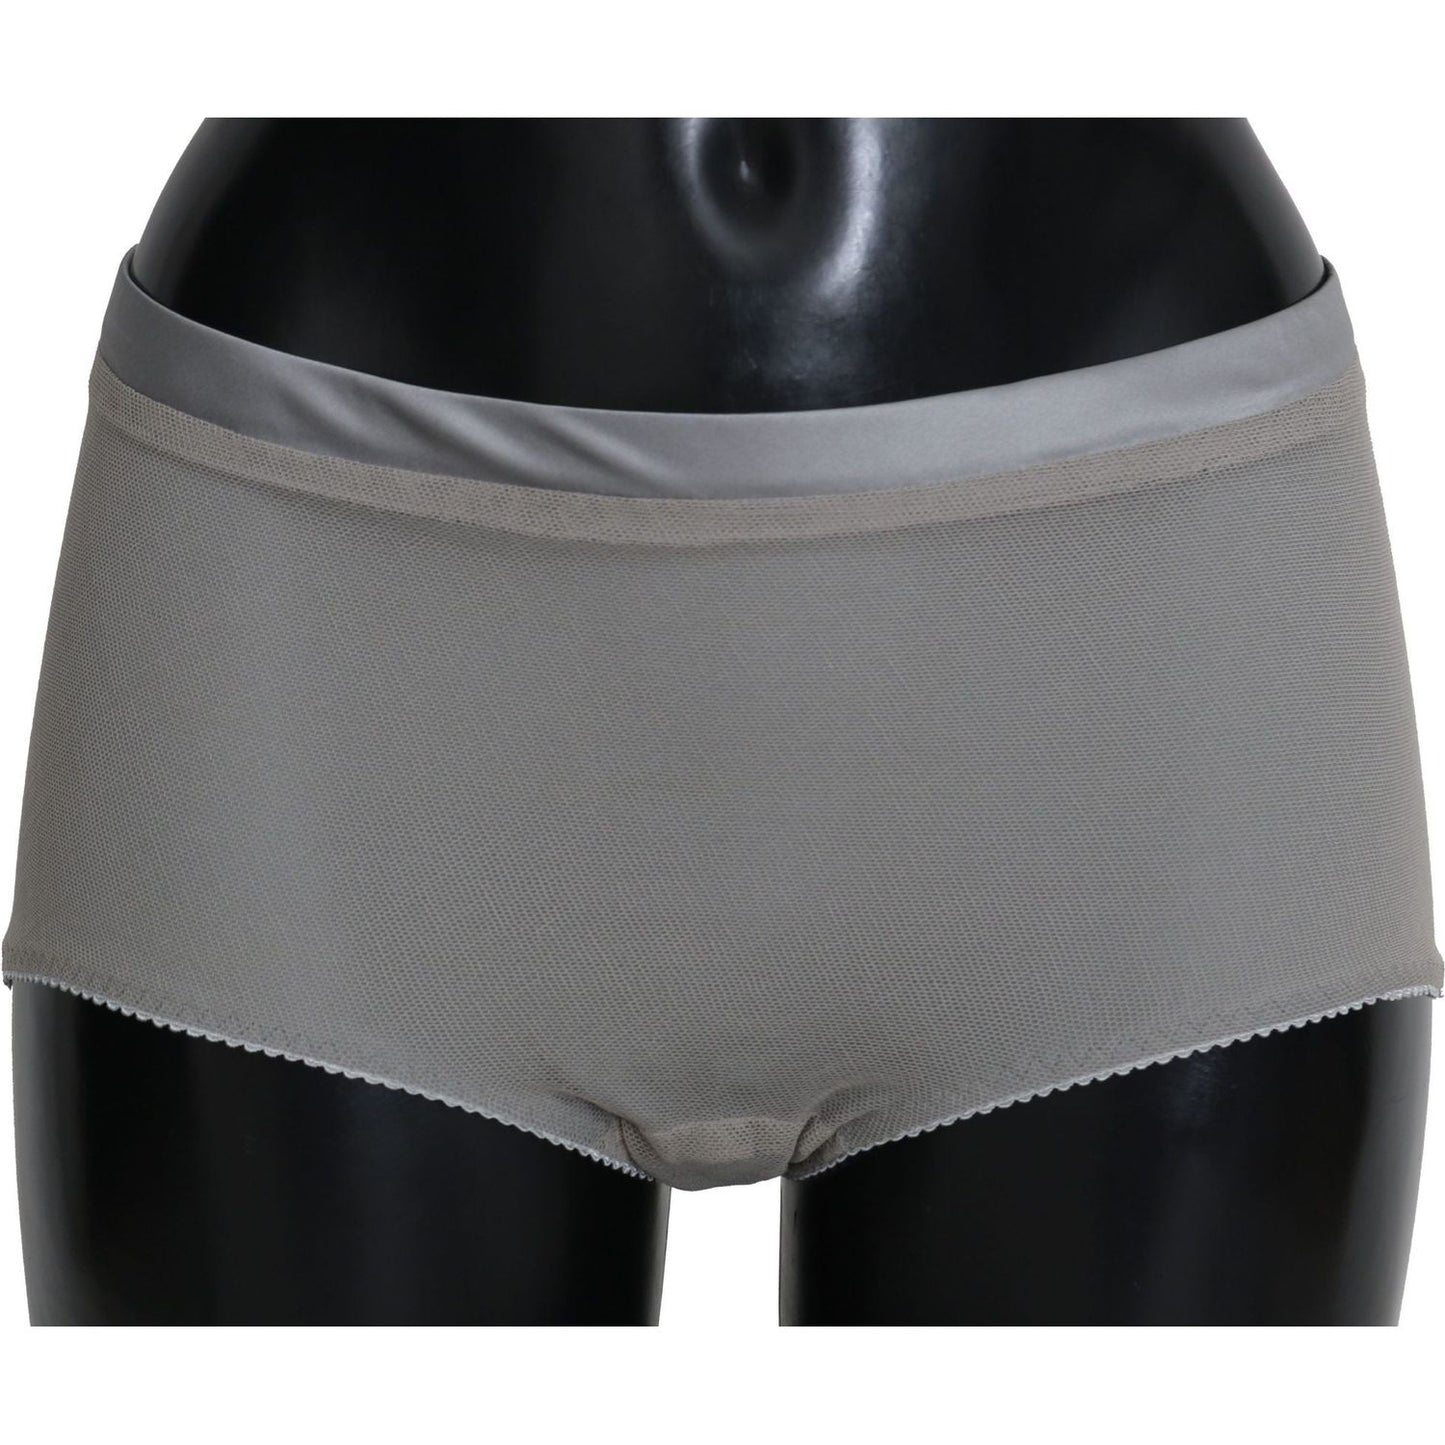 Dolce & Gabbana Underwear Silver With Net Silk Bottoms underwear-silver-with-net-silk-bottoms IMG_3699-scaled-de2cfad7-d0b.jpg